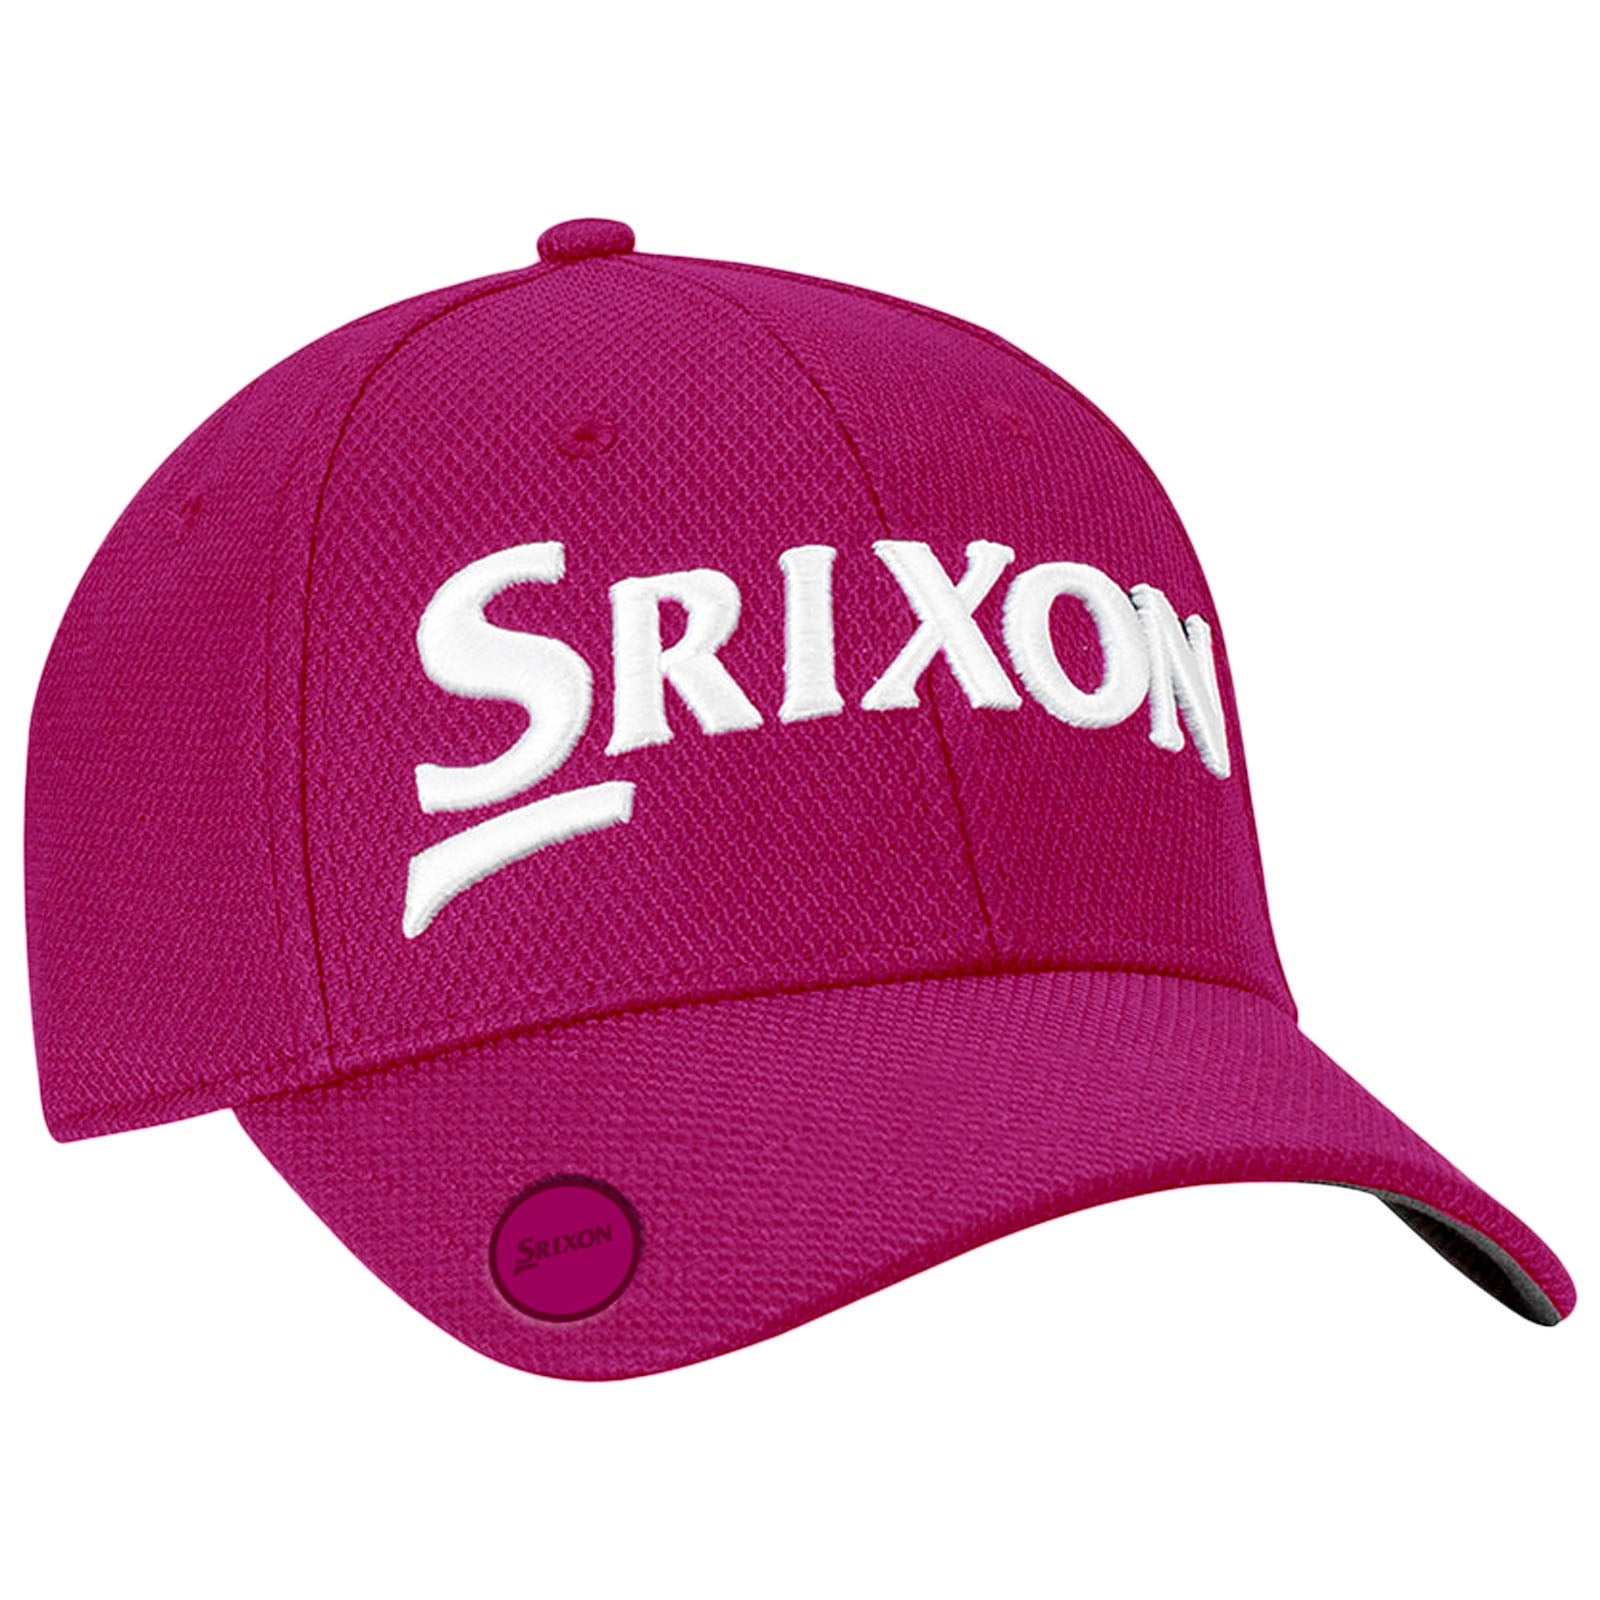 Srixon Mens SRX Ball Marker Cap – More Sports